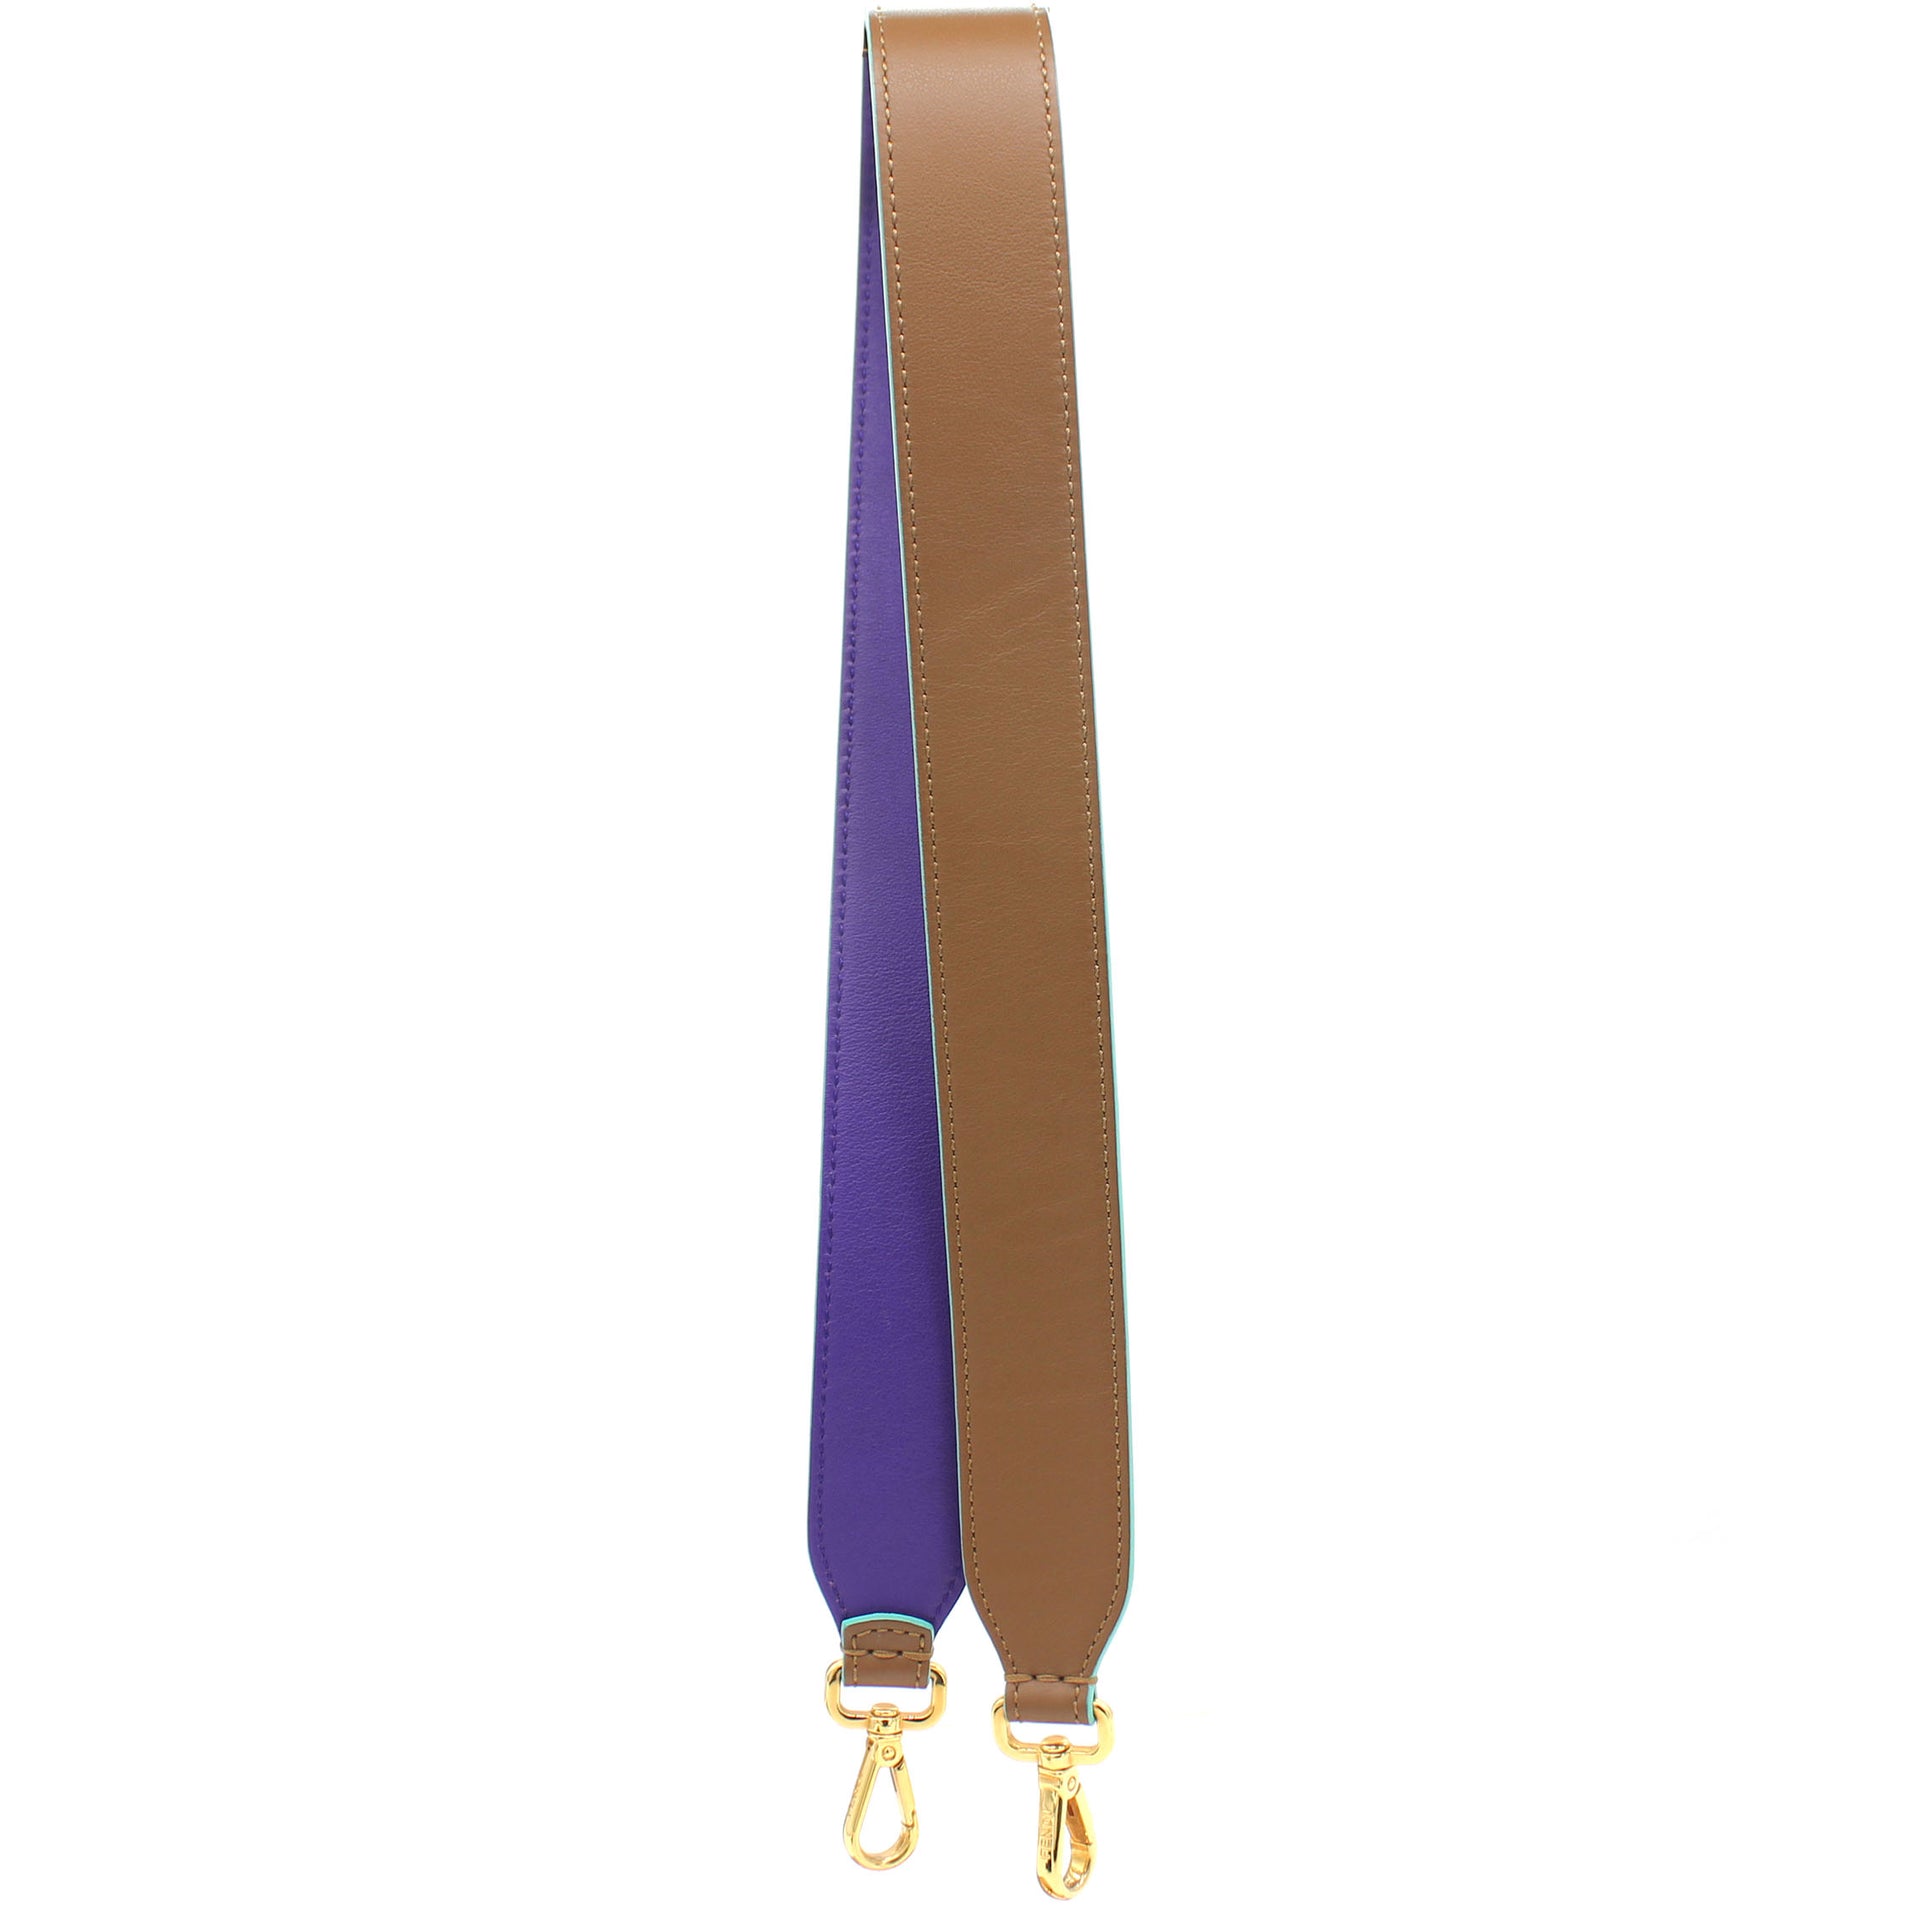 Tan/Purple Leather Interchangeable Shoulder Bag Strap